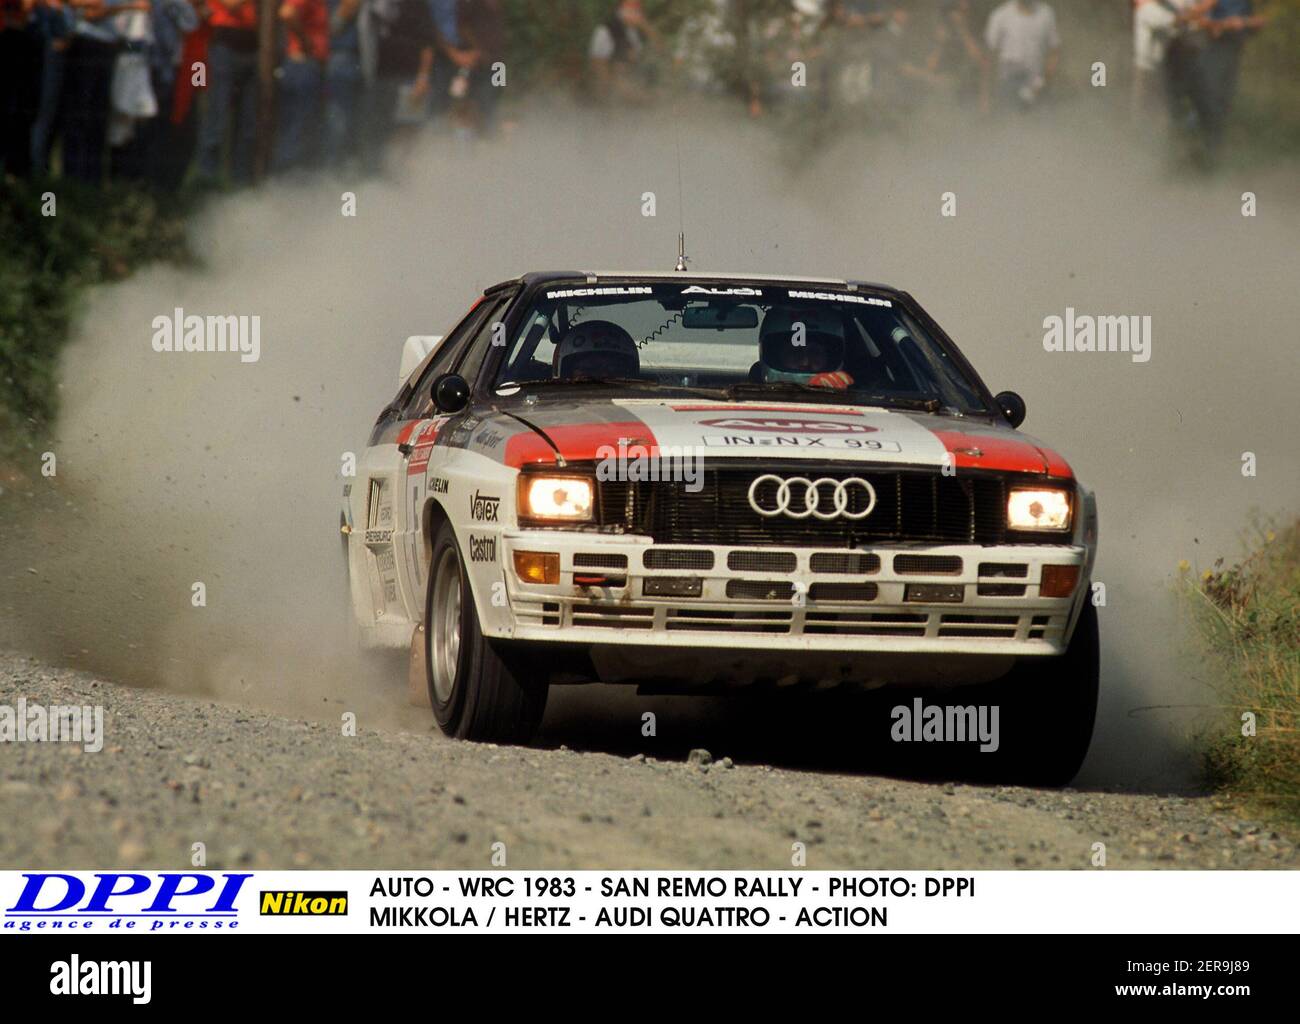 AUTO - WRC 1983 - SAN REMO RALLY - PHOTO: DPPI HANNU MIKKOLA / HERTZ - AUDI QUATTRO - ACTION ZZZZ Stock Photo